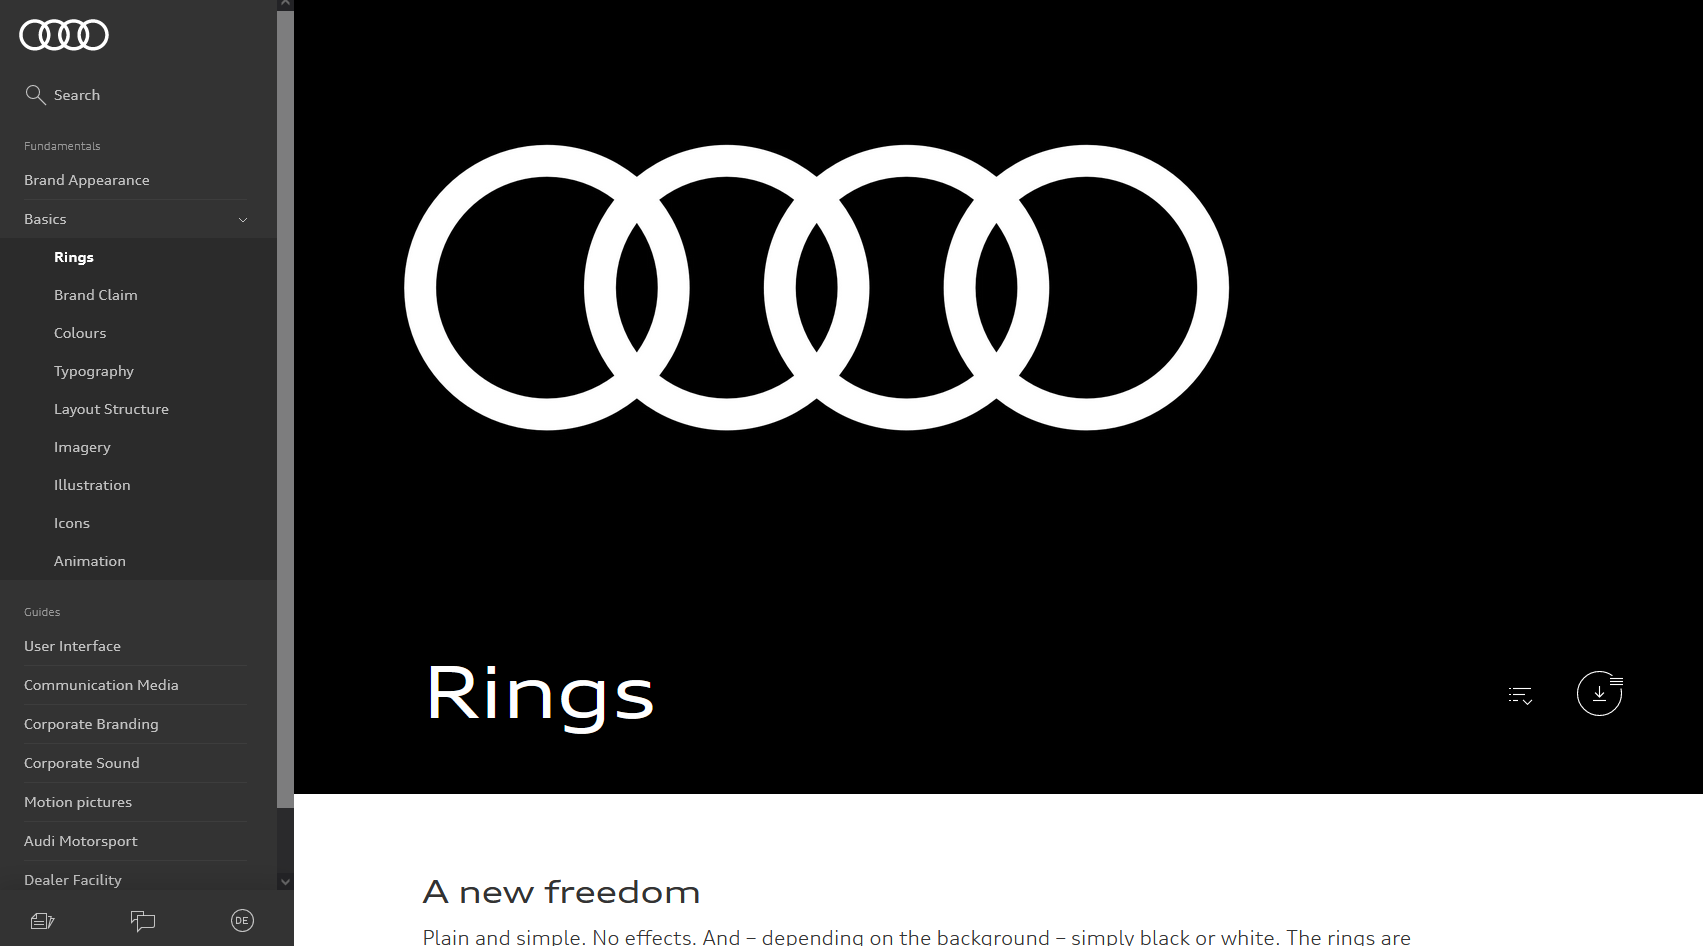 Audi's Brand Guide